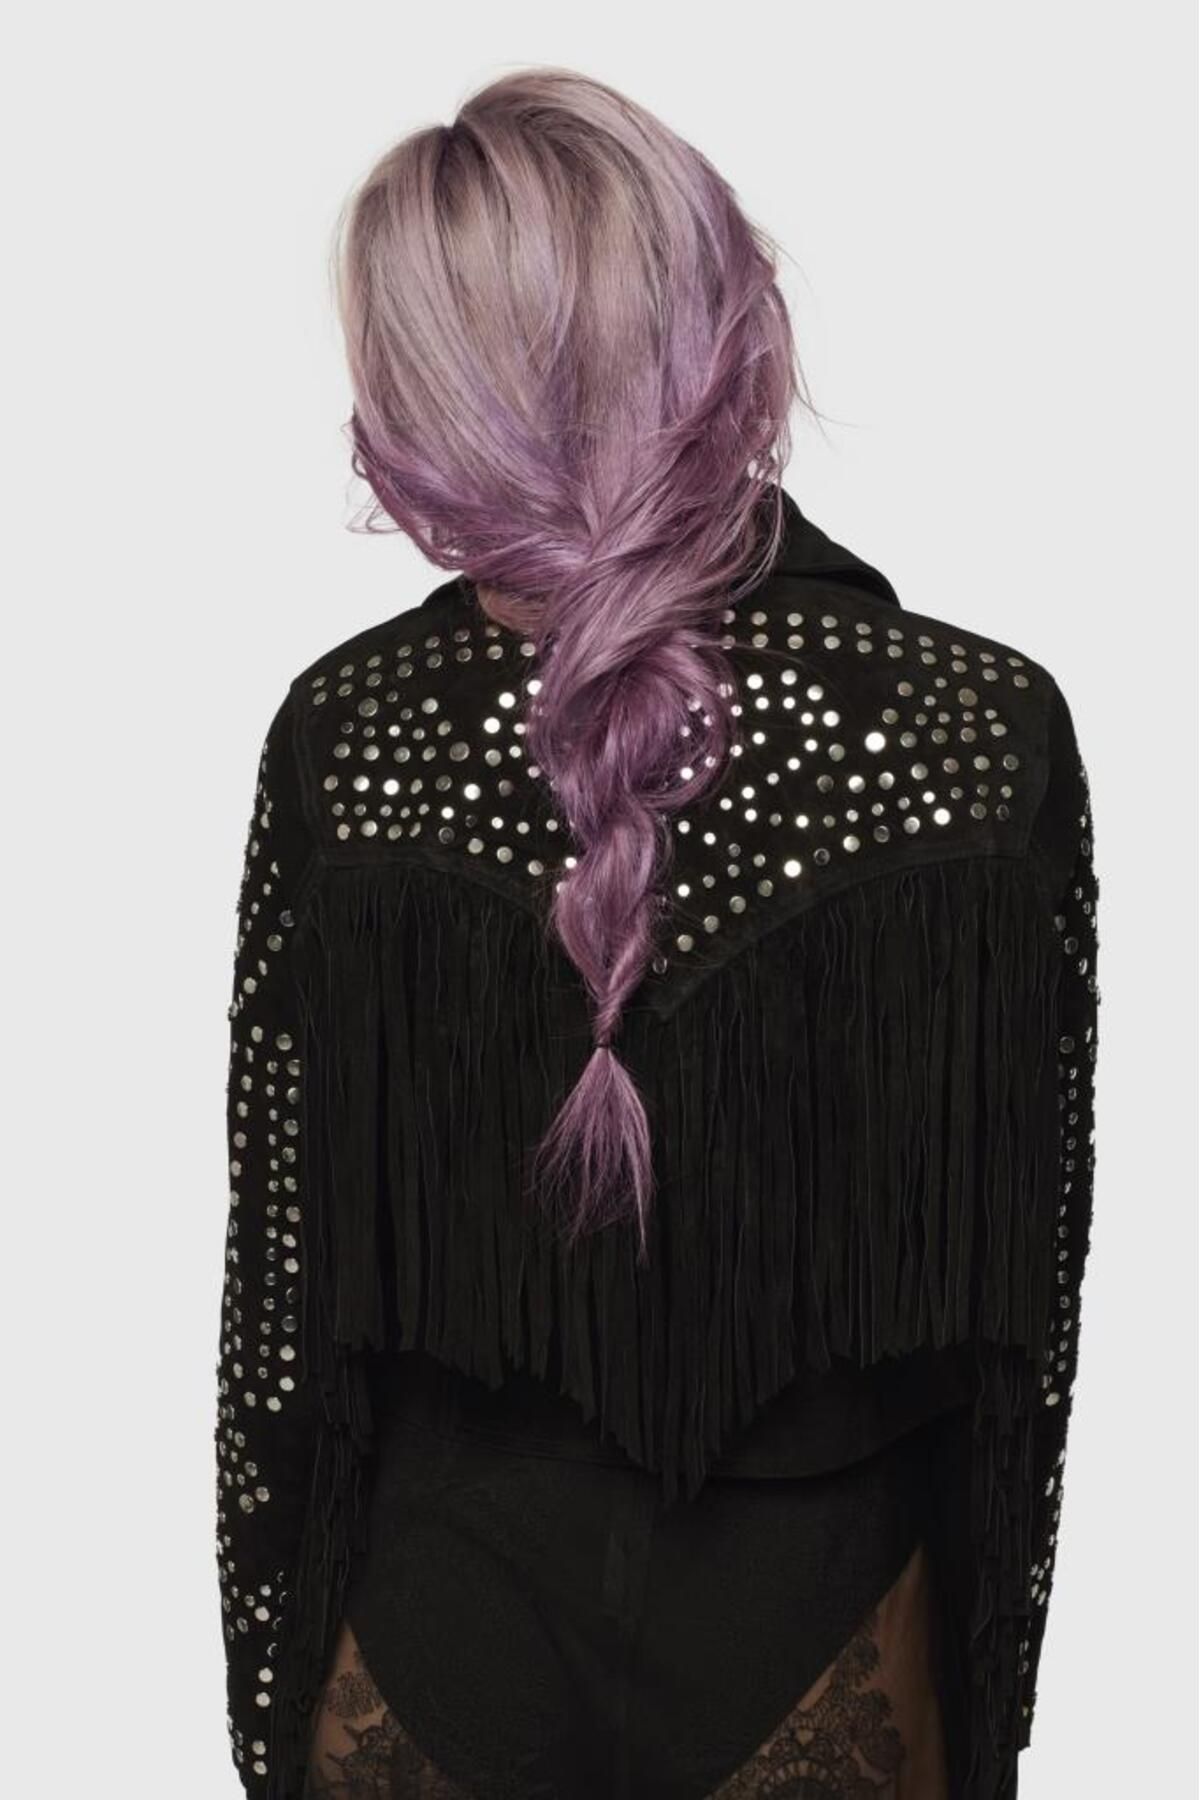 L'Oreal Paris Colorista Spray Saç Boyası Lavender